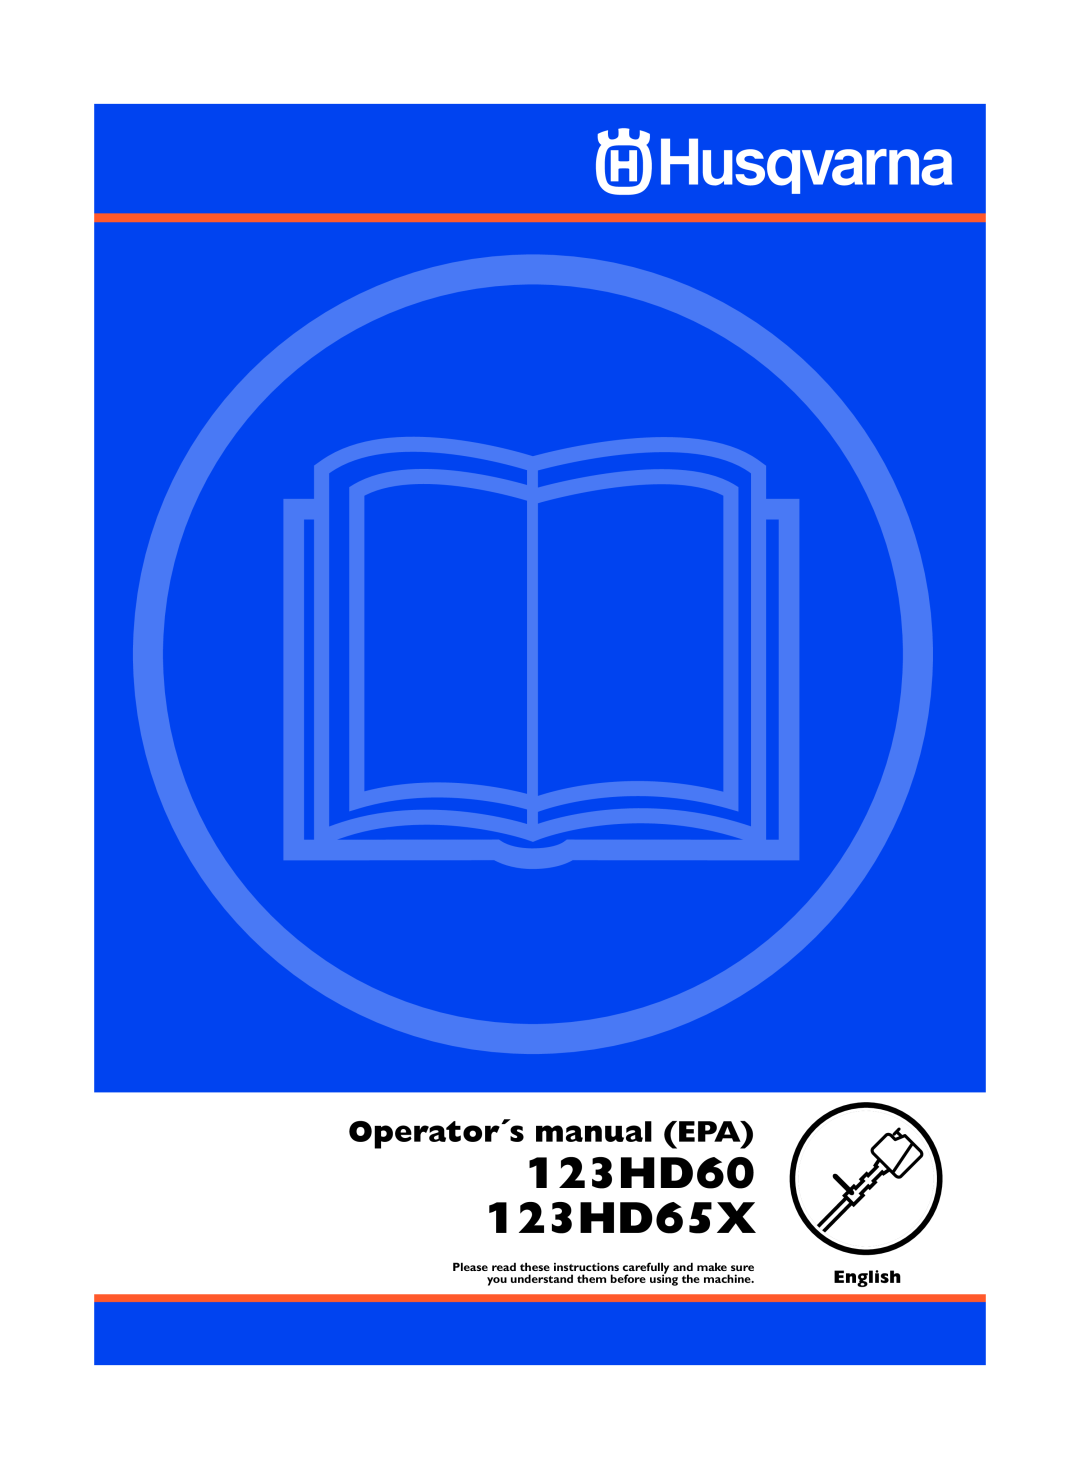 Husqvarna manual 123HD60 123HD65X, Operator´s manual EPA, English 